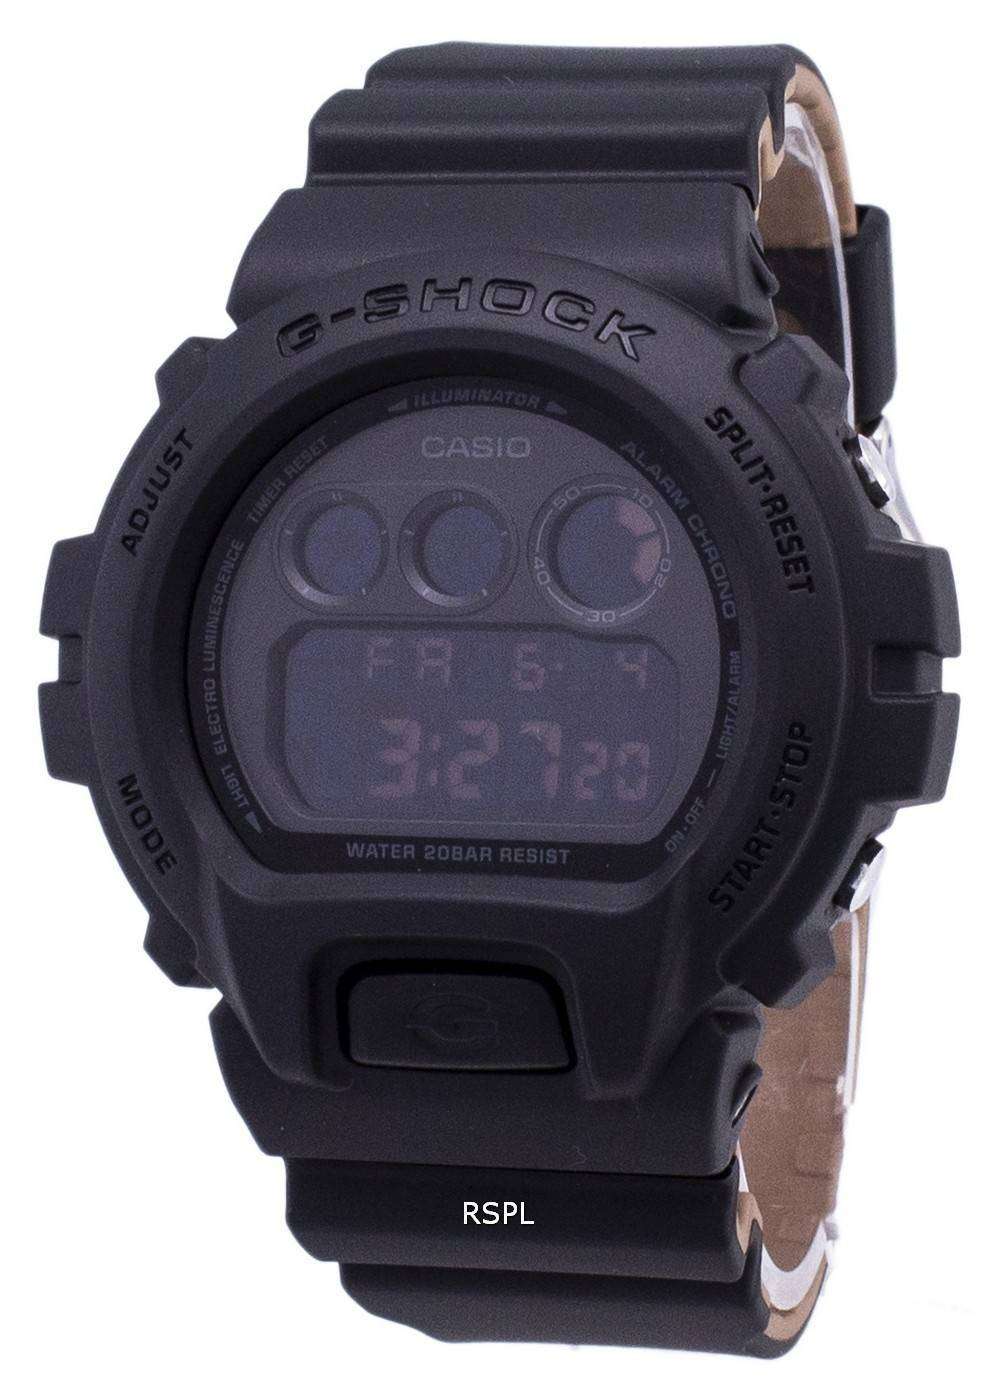 カシオ G-ショック DW 6900LU 1 クロノグラフ 200 M の耐衝撃デジタル メンズ腕時計 Japan